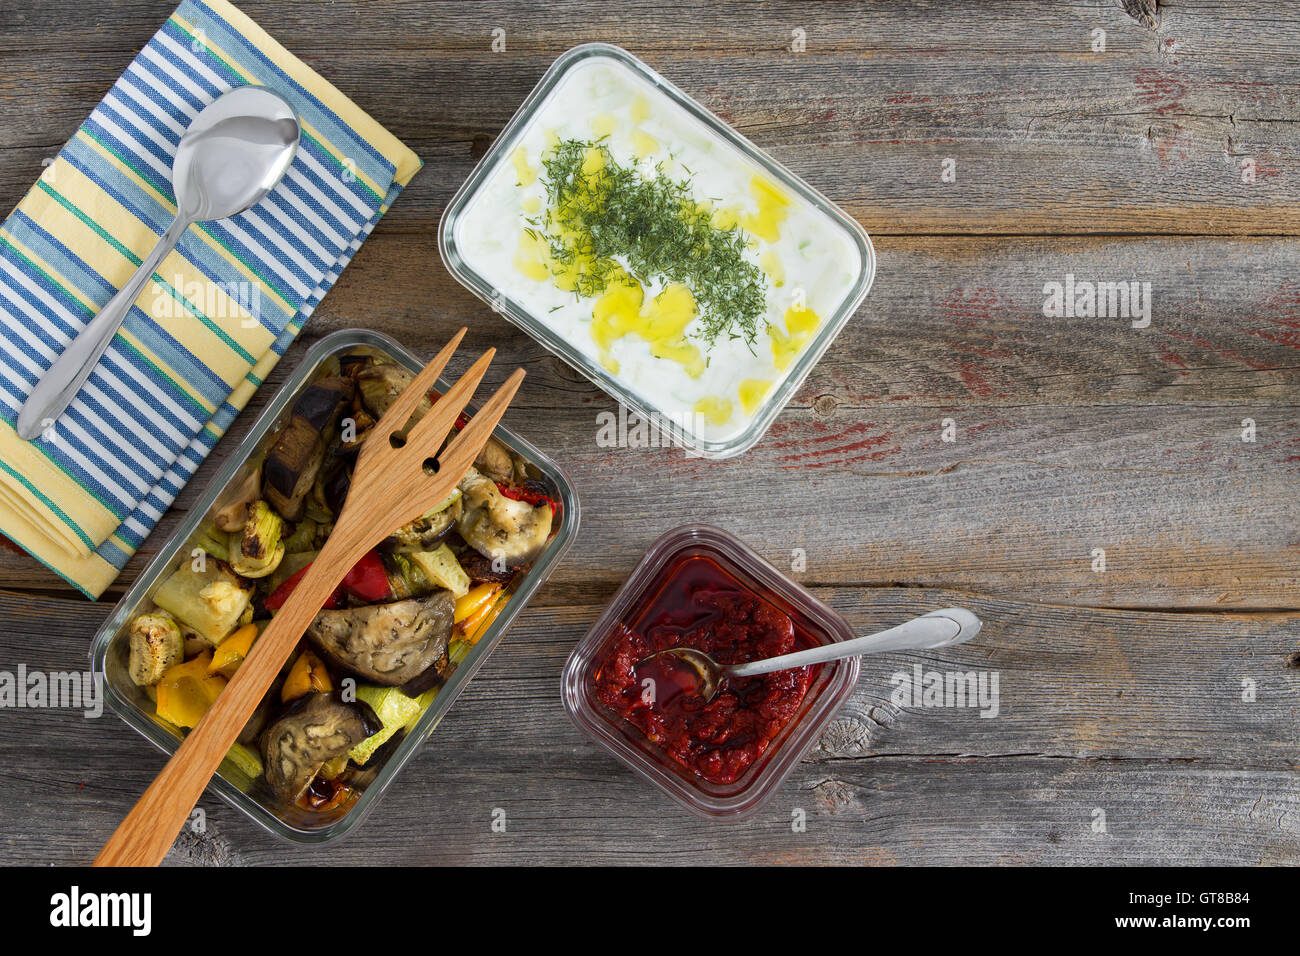 Repas sain, de rôtis ou grillades de légumes variés y compris le poivron, aubergine et courgettes servi avec sauce tzatziki cacik Banque D'Images